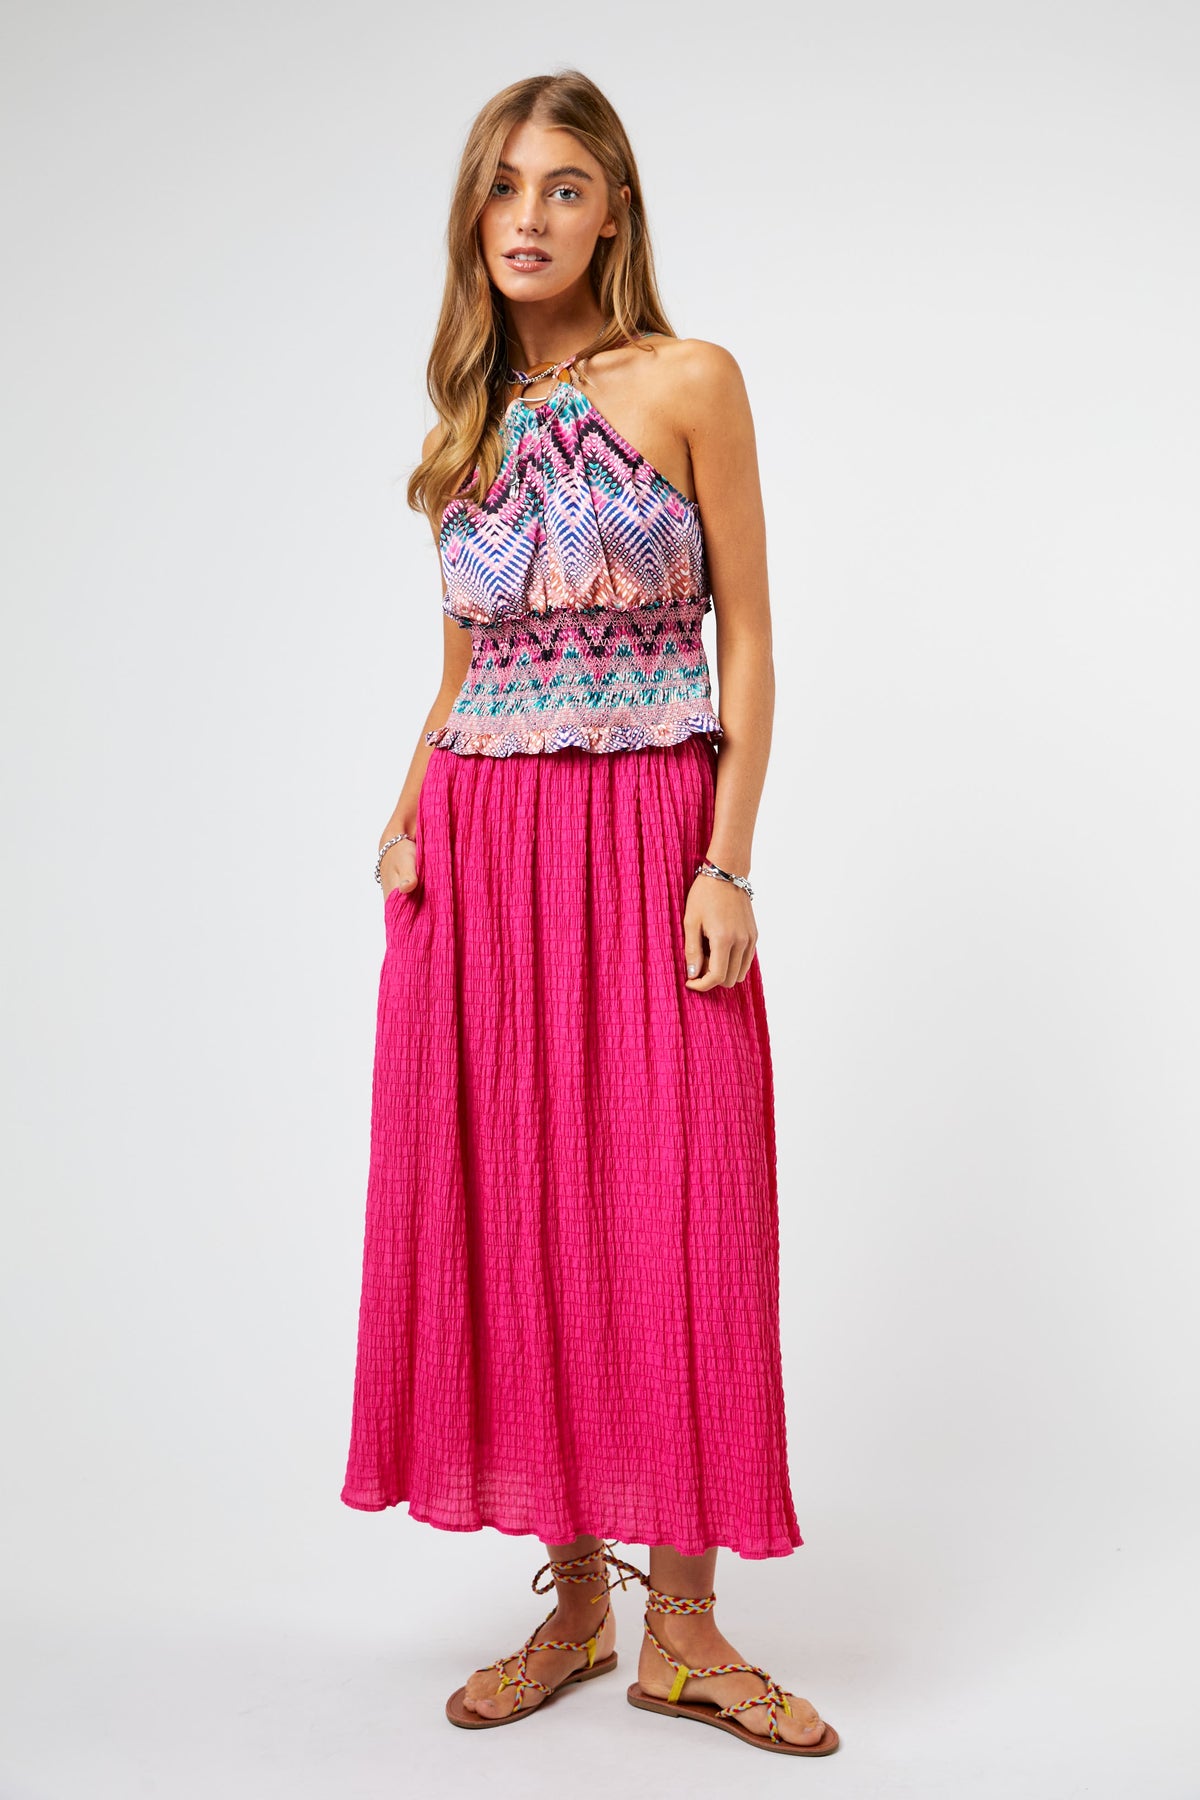 Textured Hot Pink Skirt - KC Outfitter